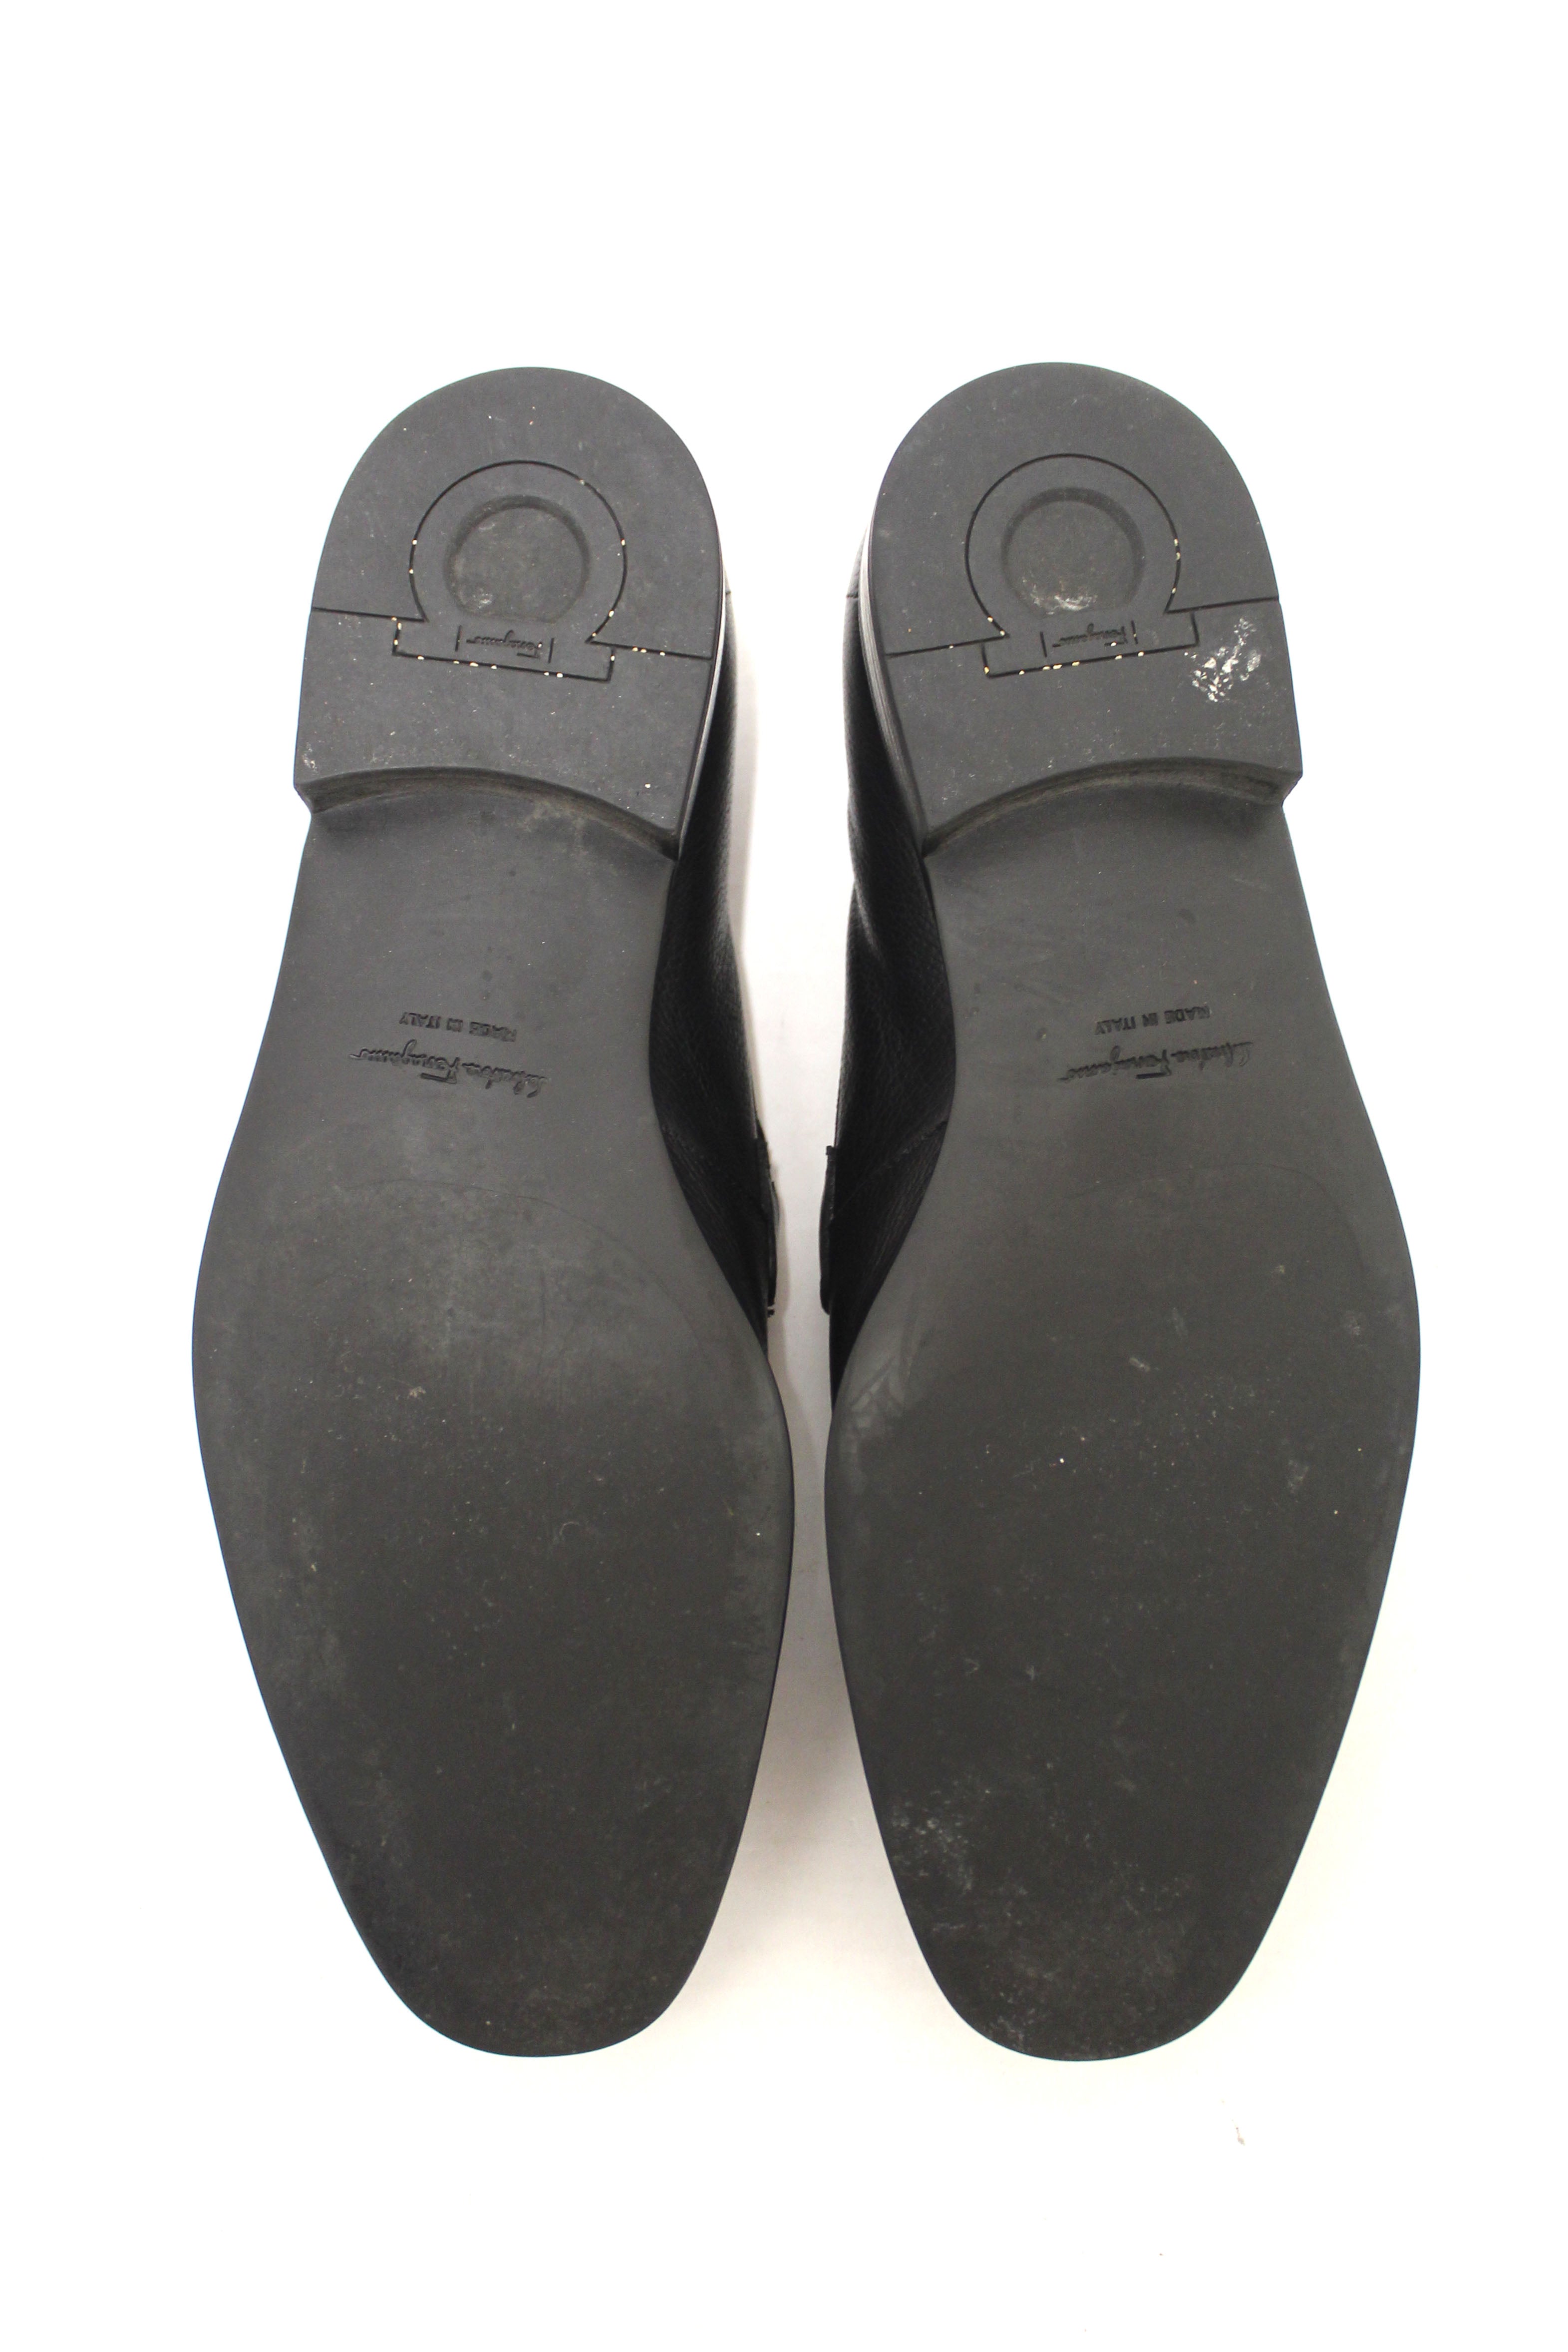 Authentic Salvatore Ferragamo Men's Black Flori Calf Leather Loafer Dress Shoes size 8